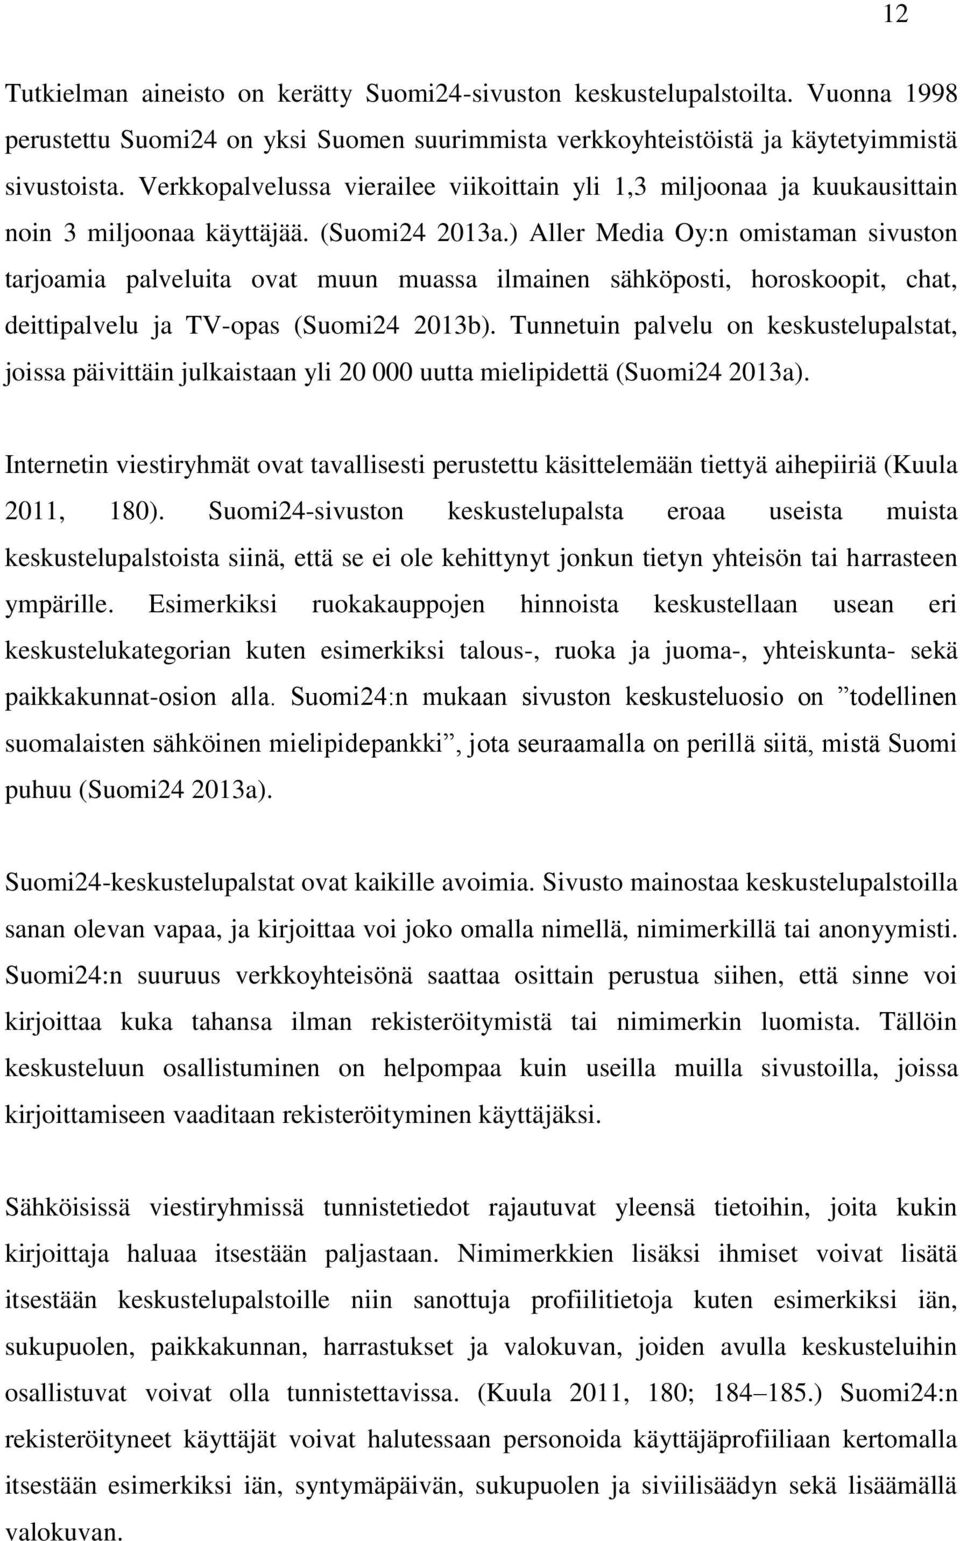 ) Aller Media Oy:n omistaman sivuston tarjoamia palveluita ovat muun muassa ilmainen sähköposti, horoskoopit, chat, deittipalvelu ja TV-opas (Suomi24 2013b).